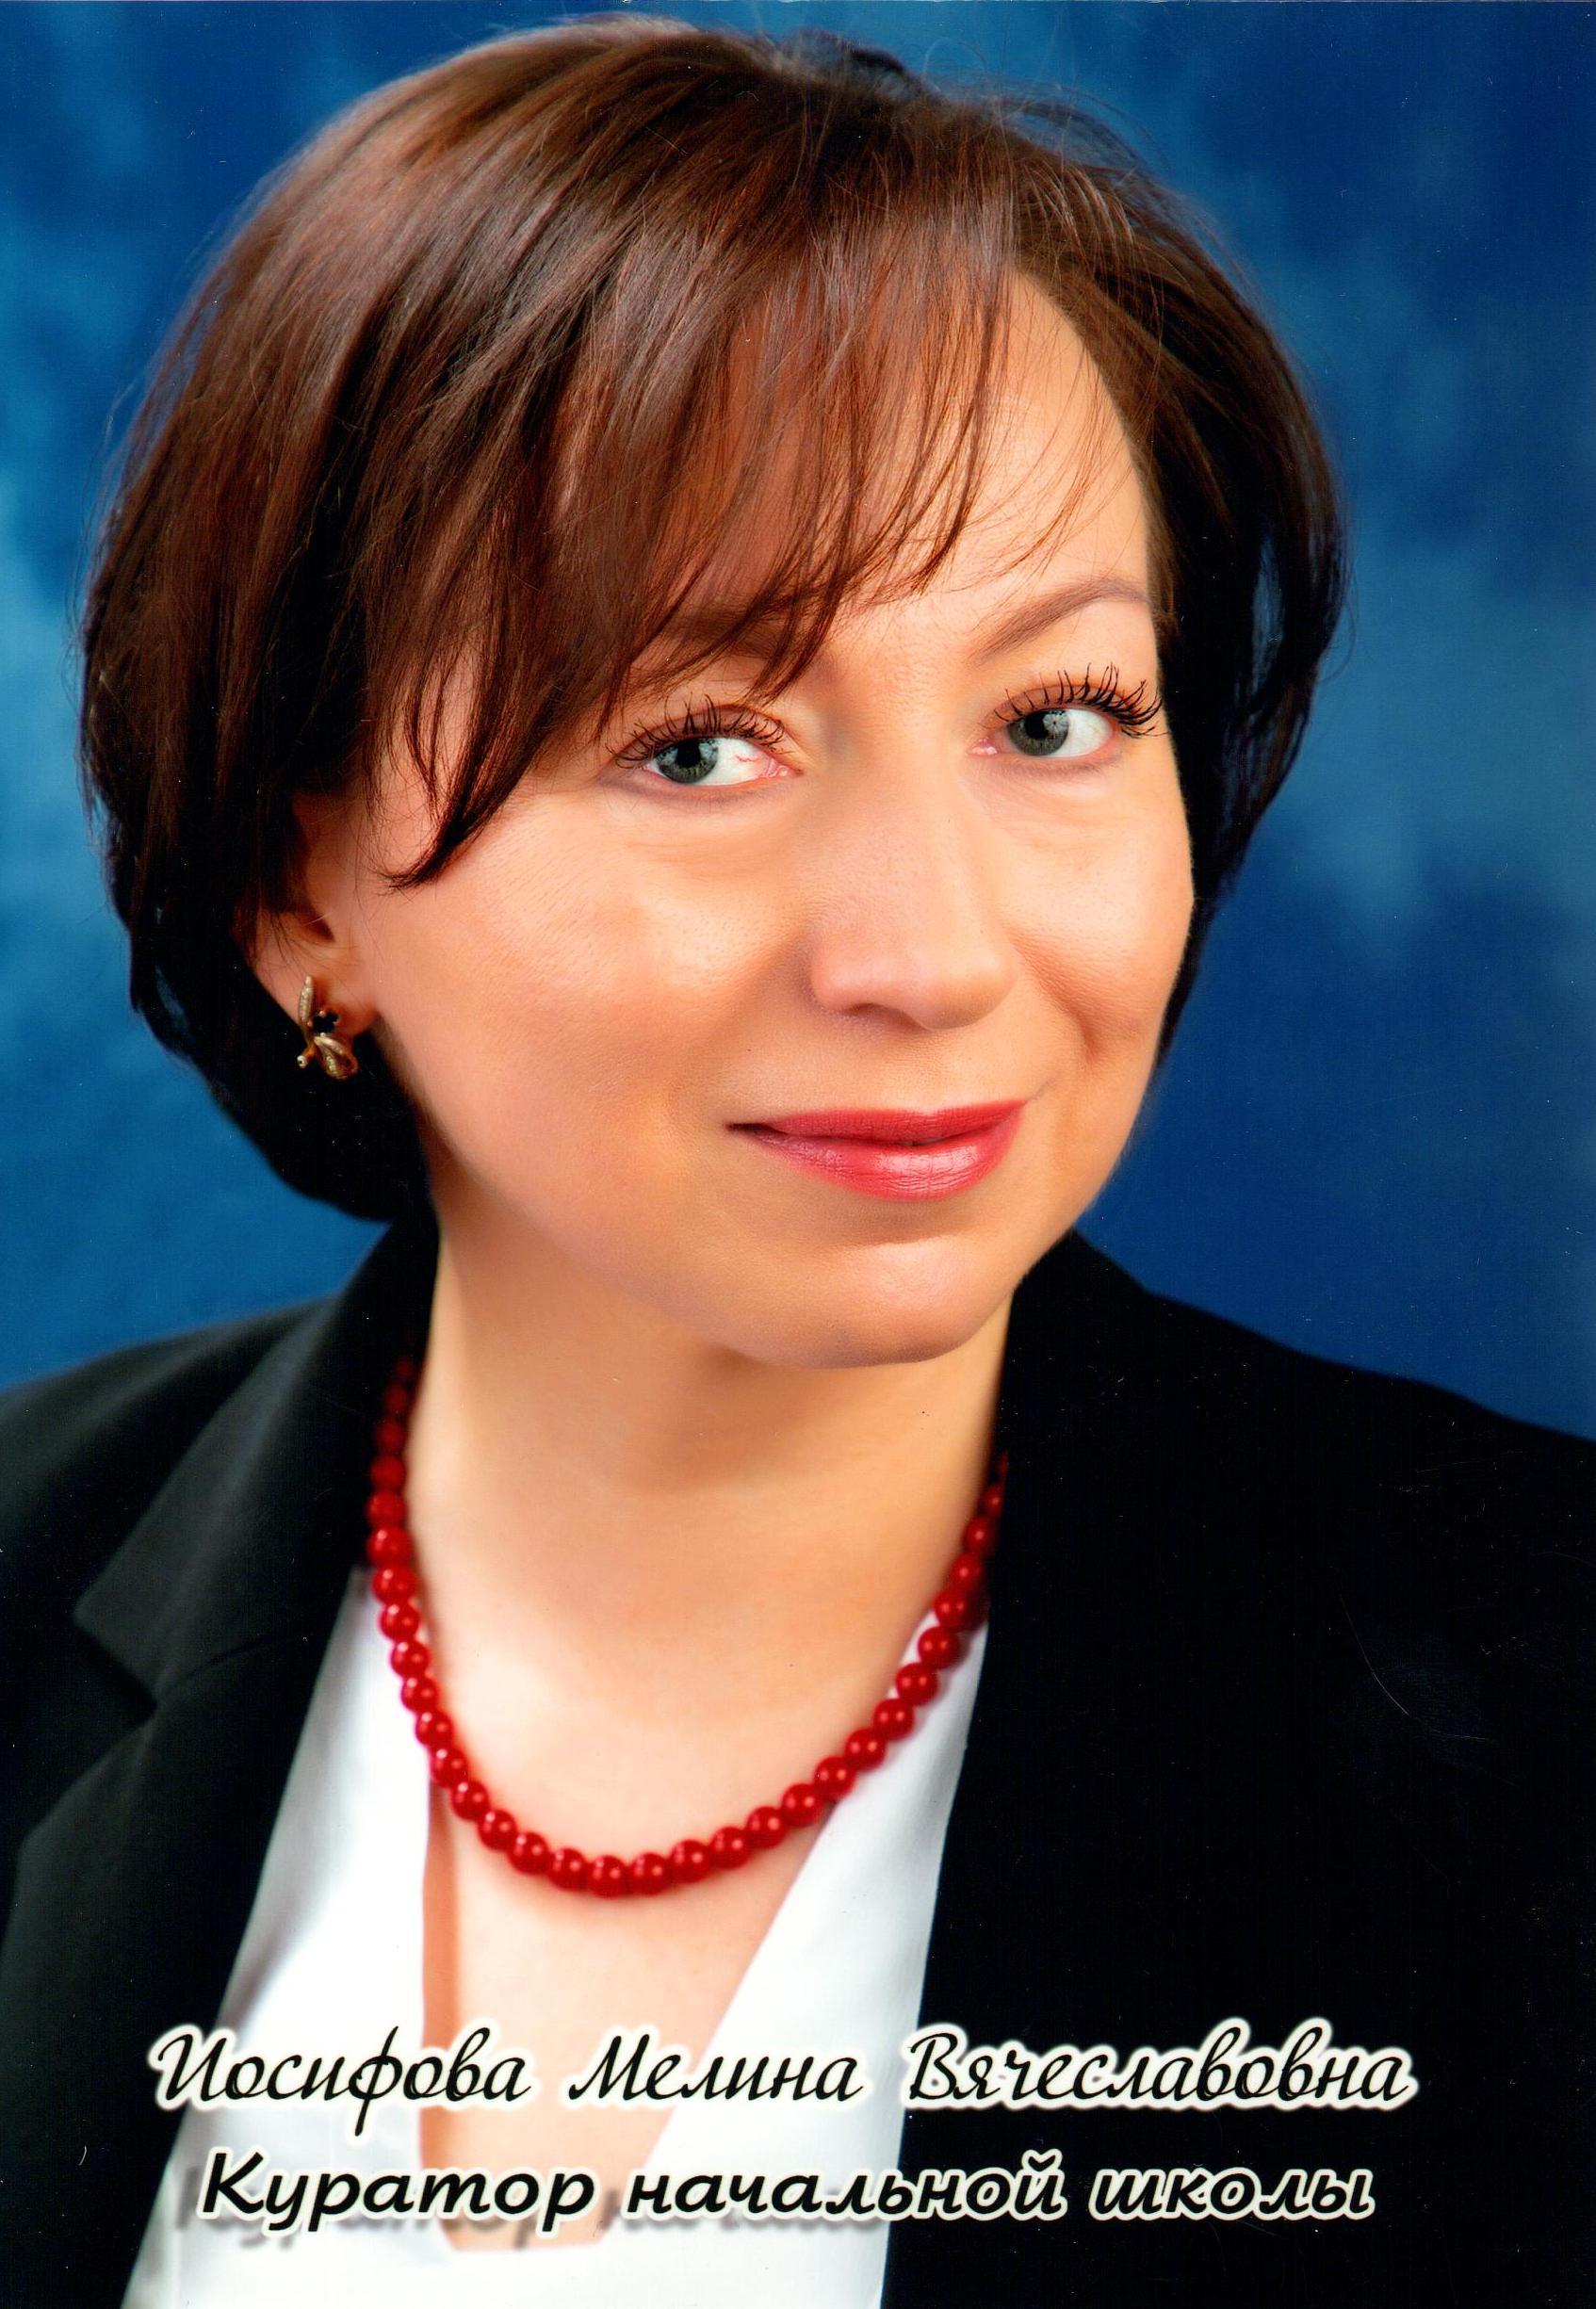 Иосифова Мелина Вячеславовна.